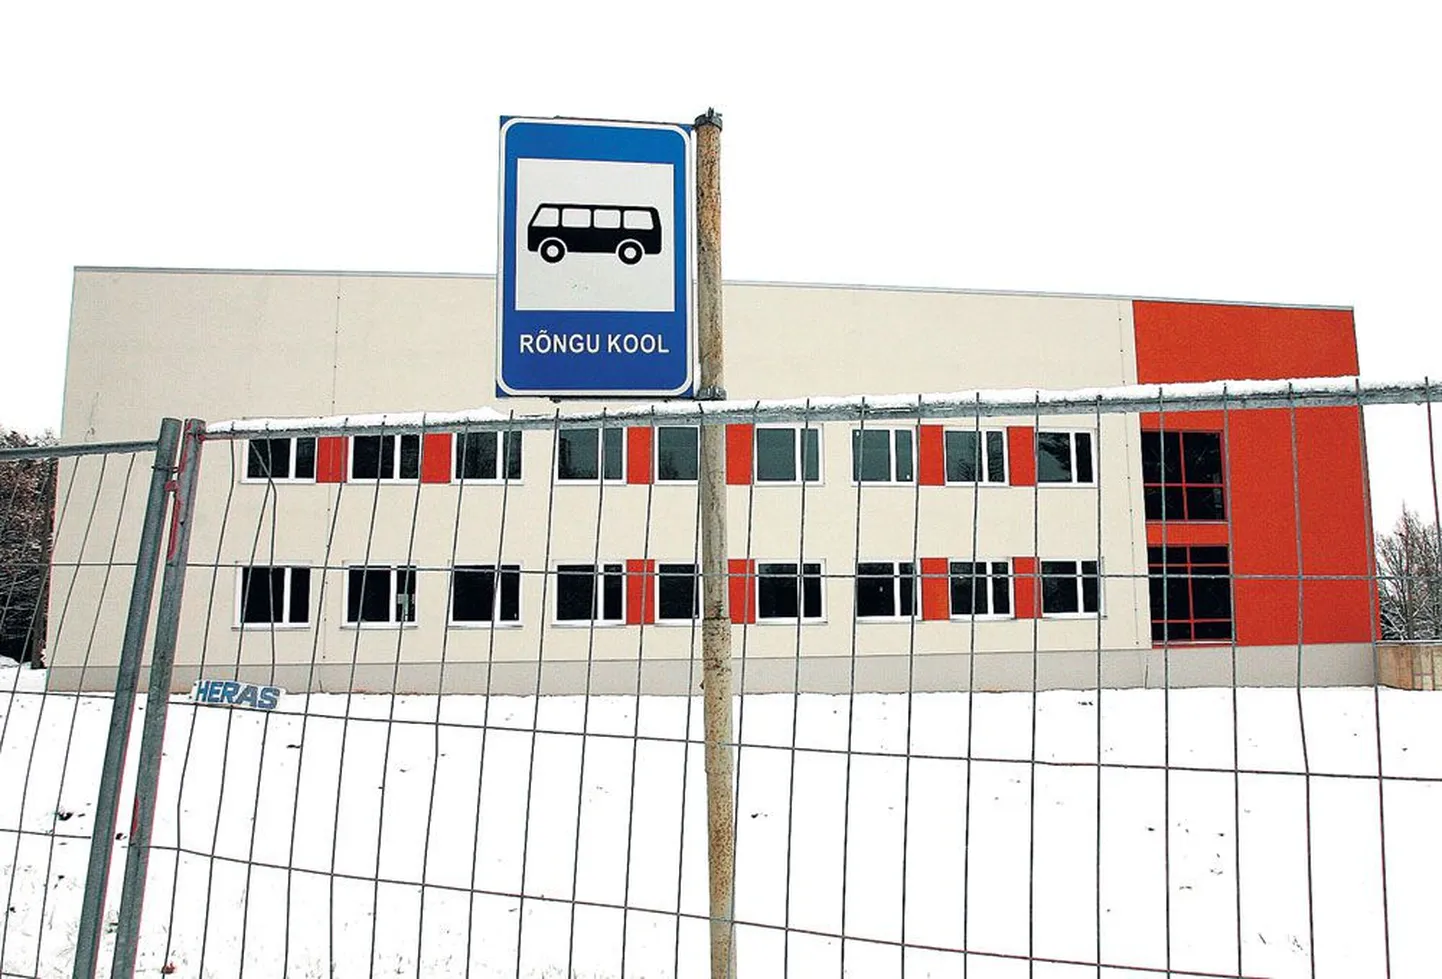 Rõngu tüliõun - koolimaja, mis pidi lepingu järgi valmima 2009. aasta 31. detsembriks.